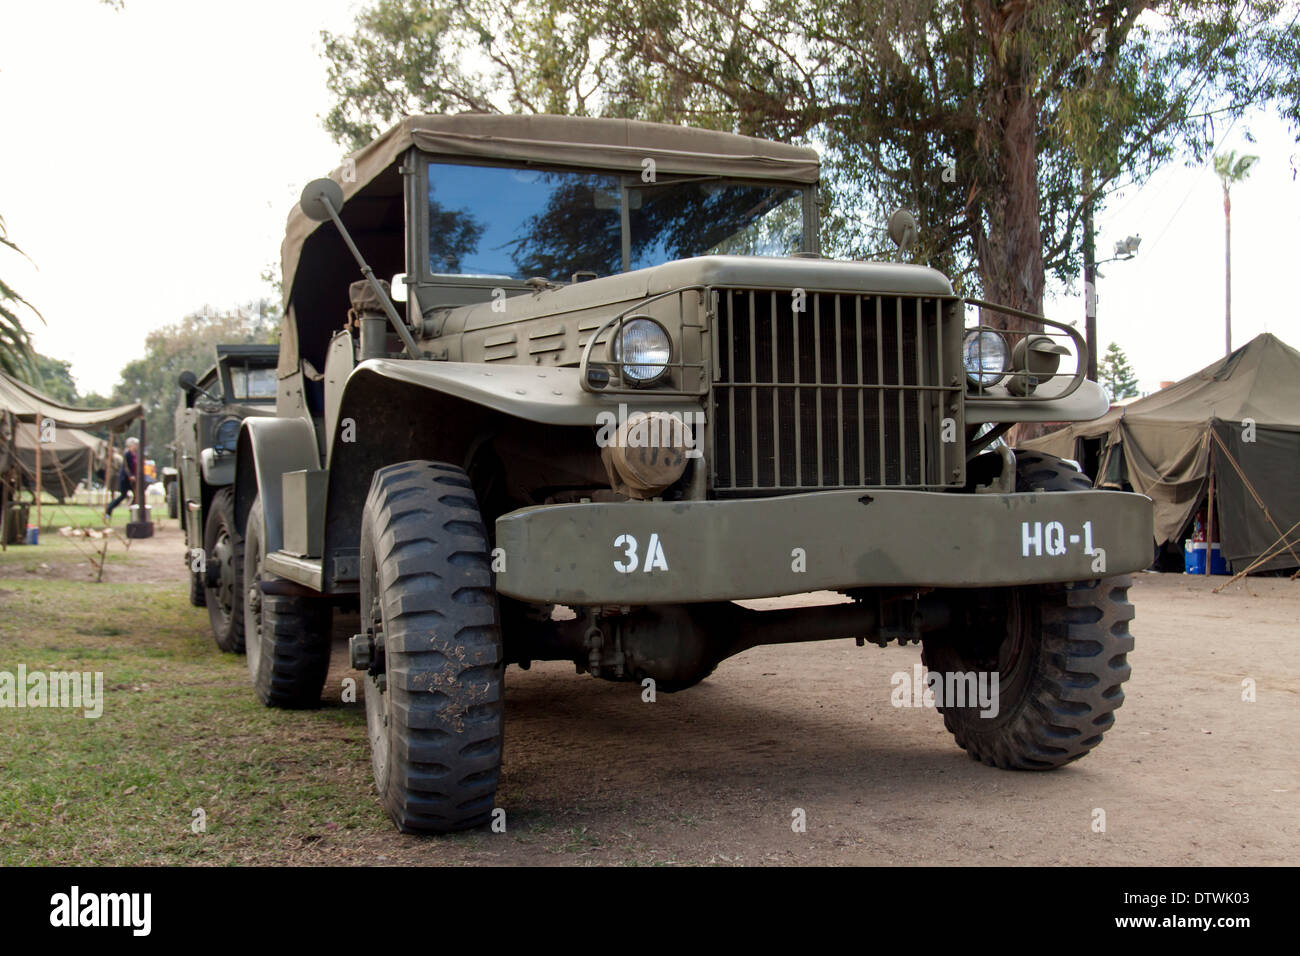 Imagen de un vehículo militar de la II Guerra Mundial Foto de stock